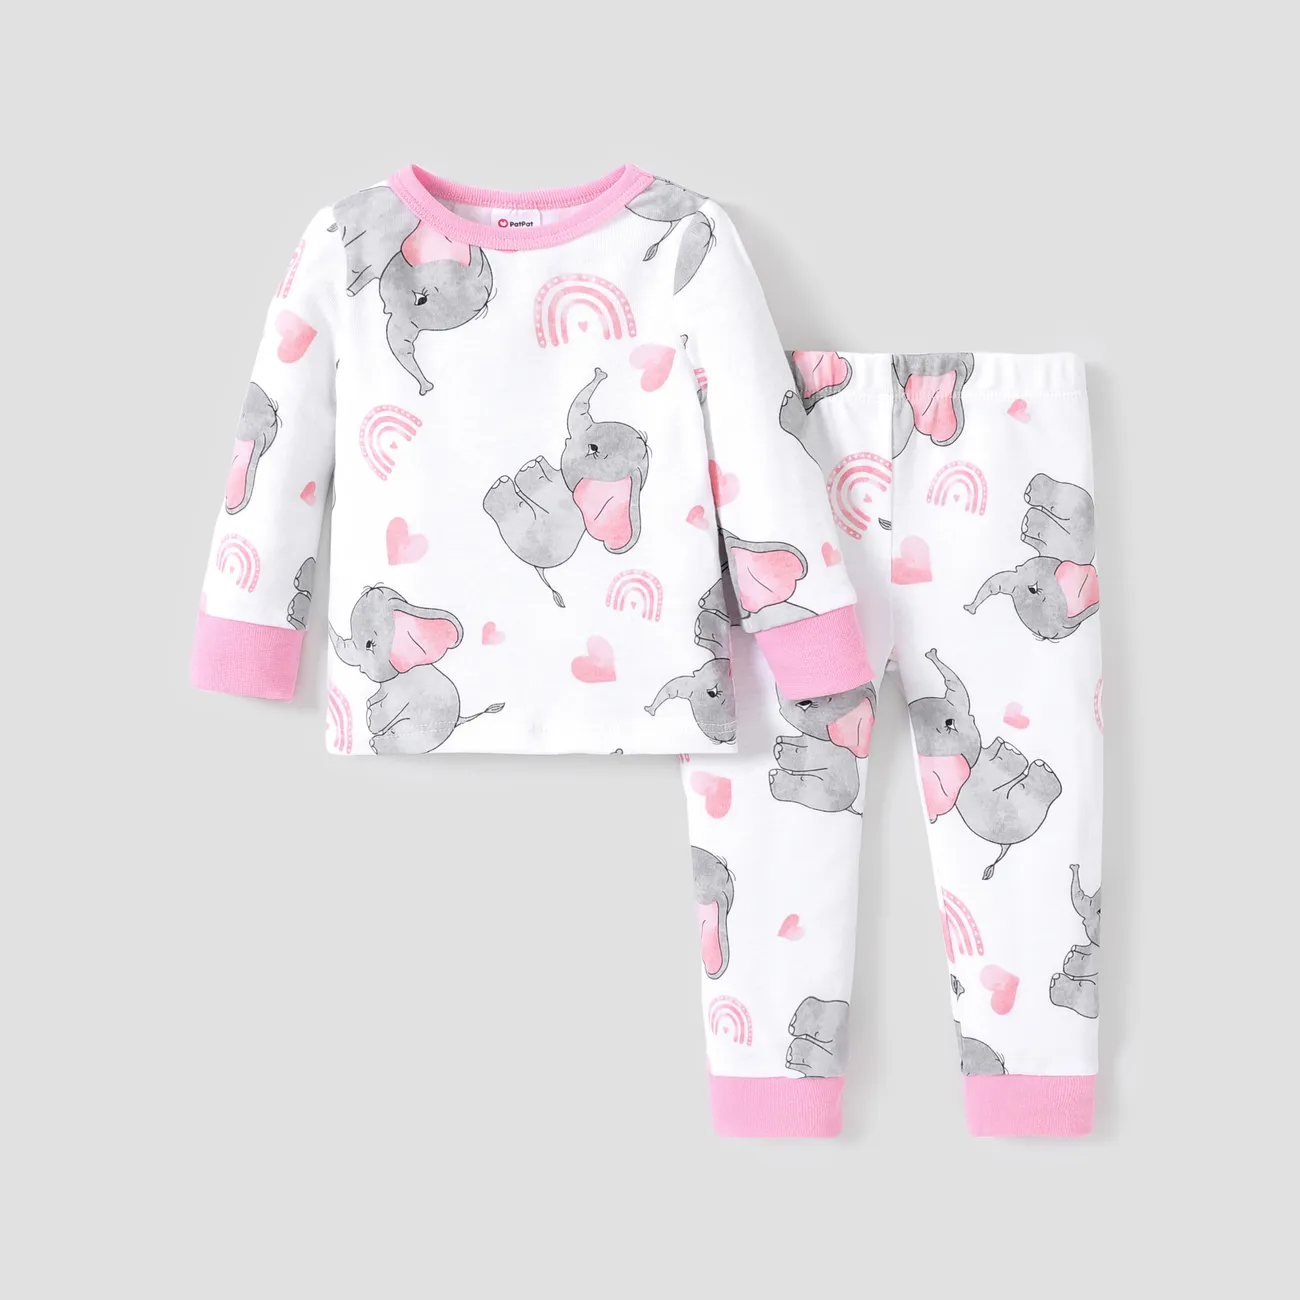 Pyjama en coton unisexe ajusté, ensemble de 2 pièces - Style basique pour enfants. Rose big image 1